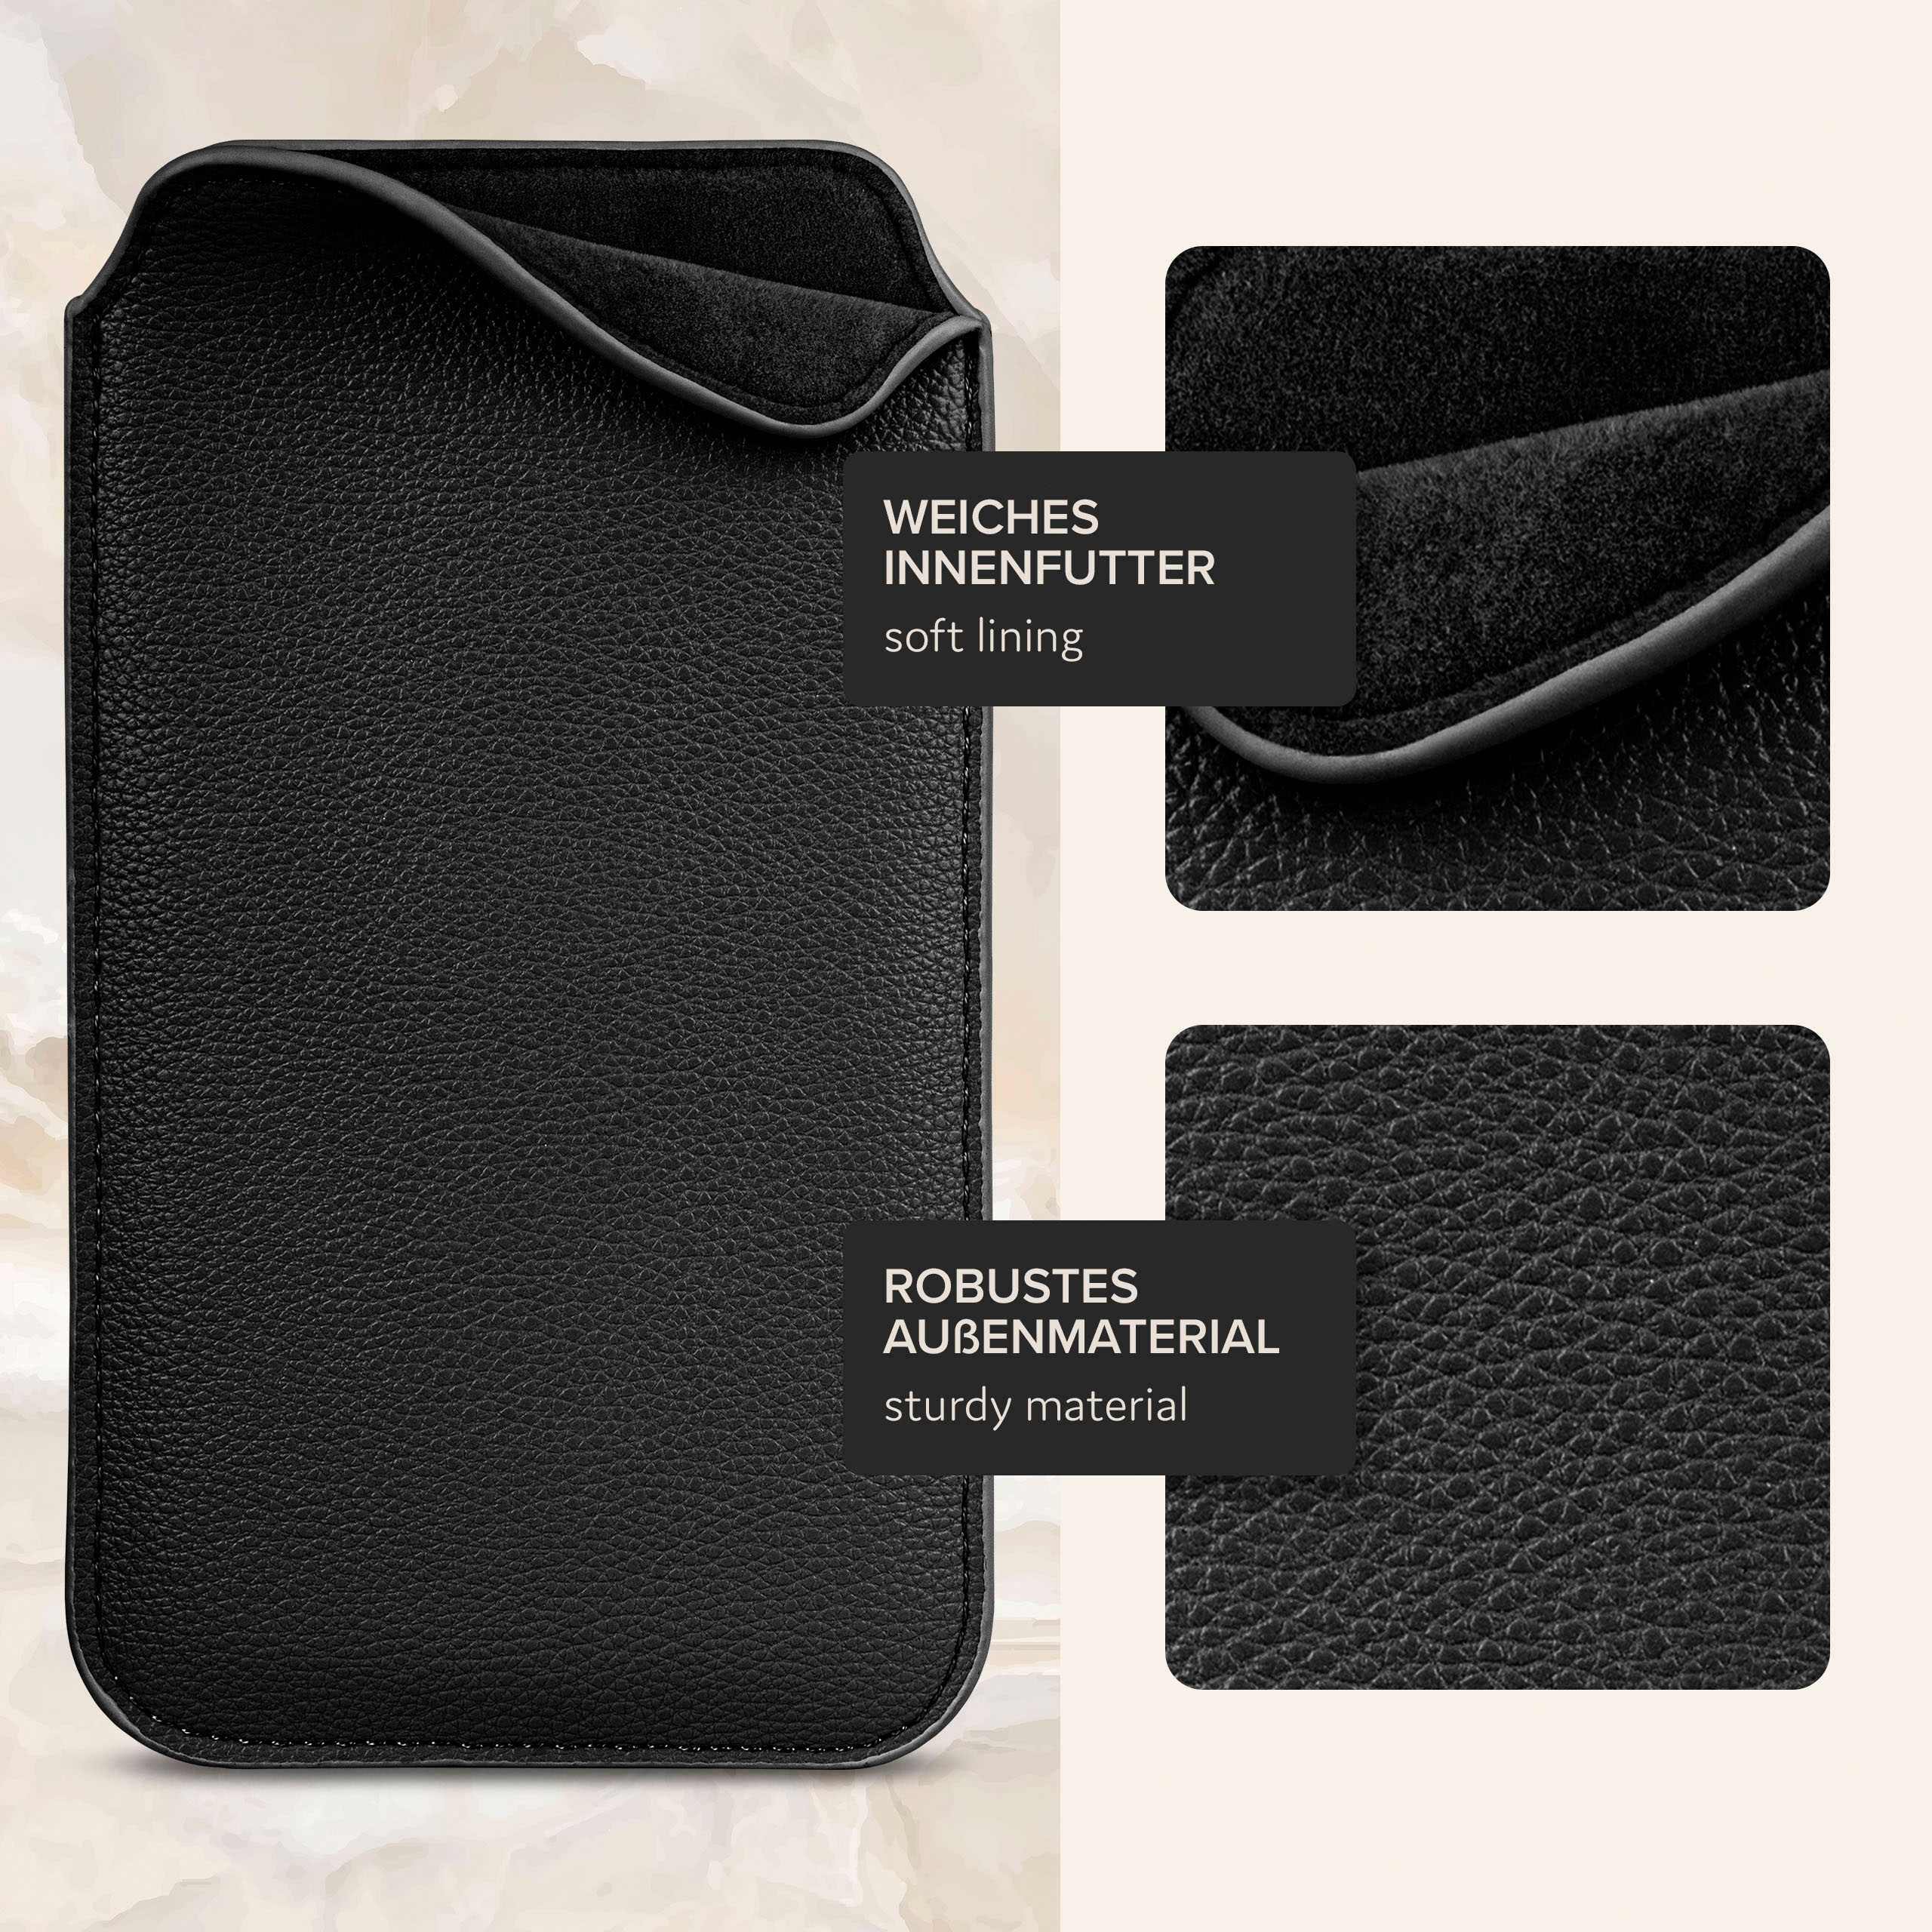 ONEFLOW Schwarz Zuglasche, S4, Einsteckhülle Full Cover, Galaxy Samsung, mit